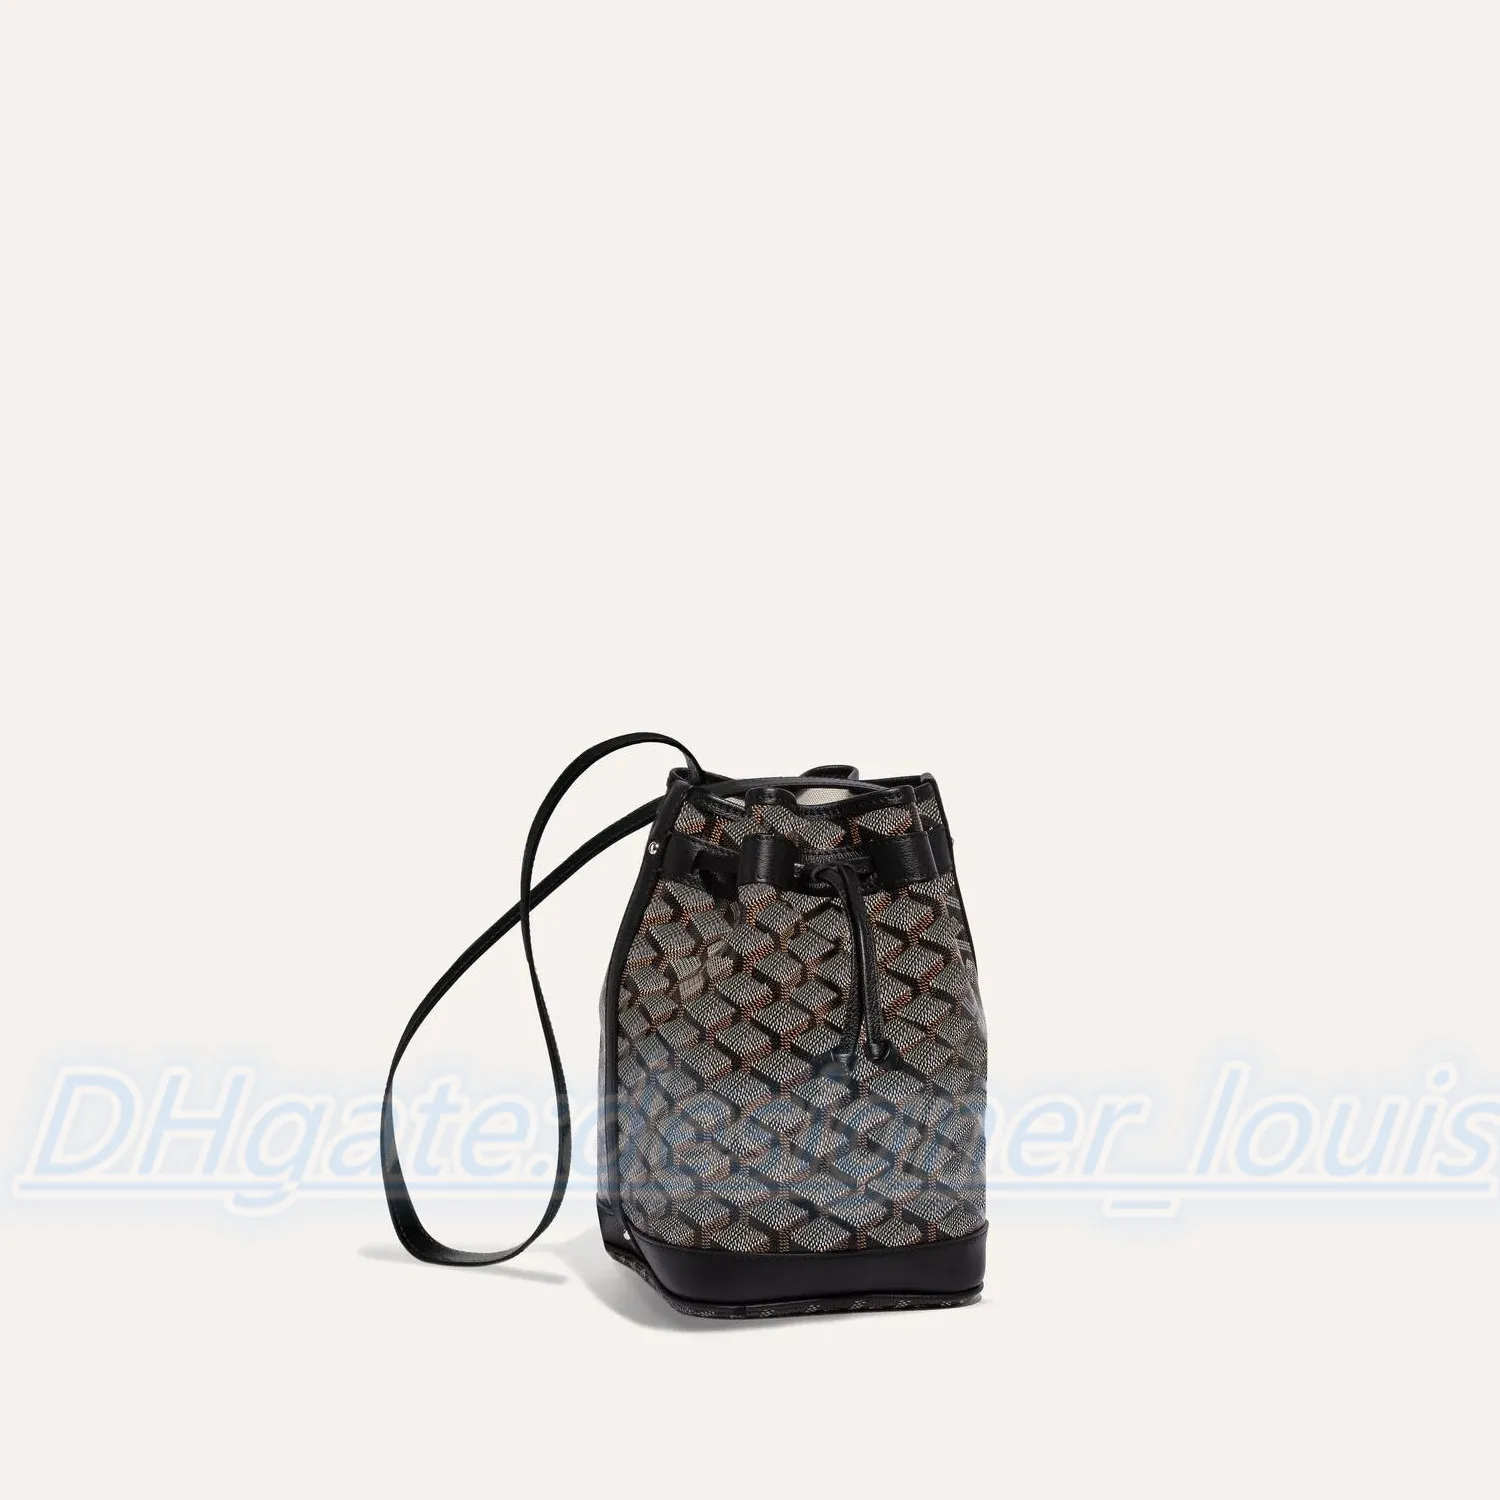 Klassieke luxe emmertas met trekkoord Designer damescadeau beroemde clutch handtas mode Leren crossbody tassen bakken handbag268c